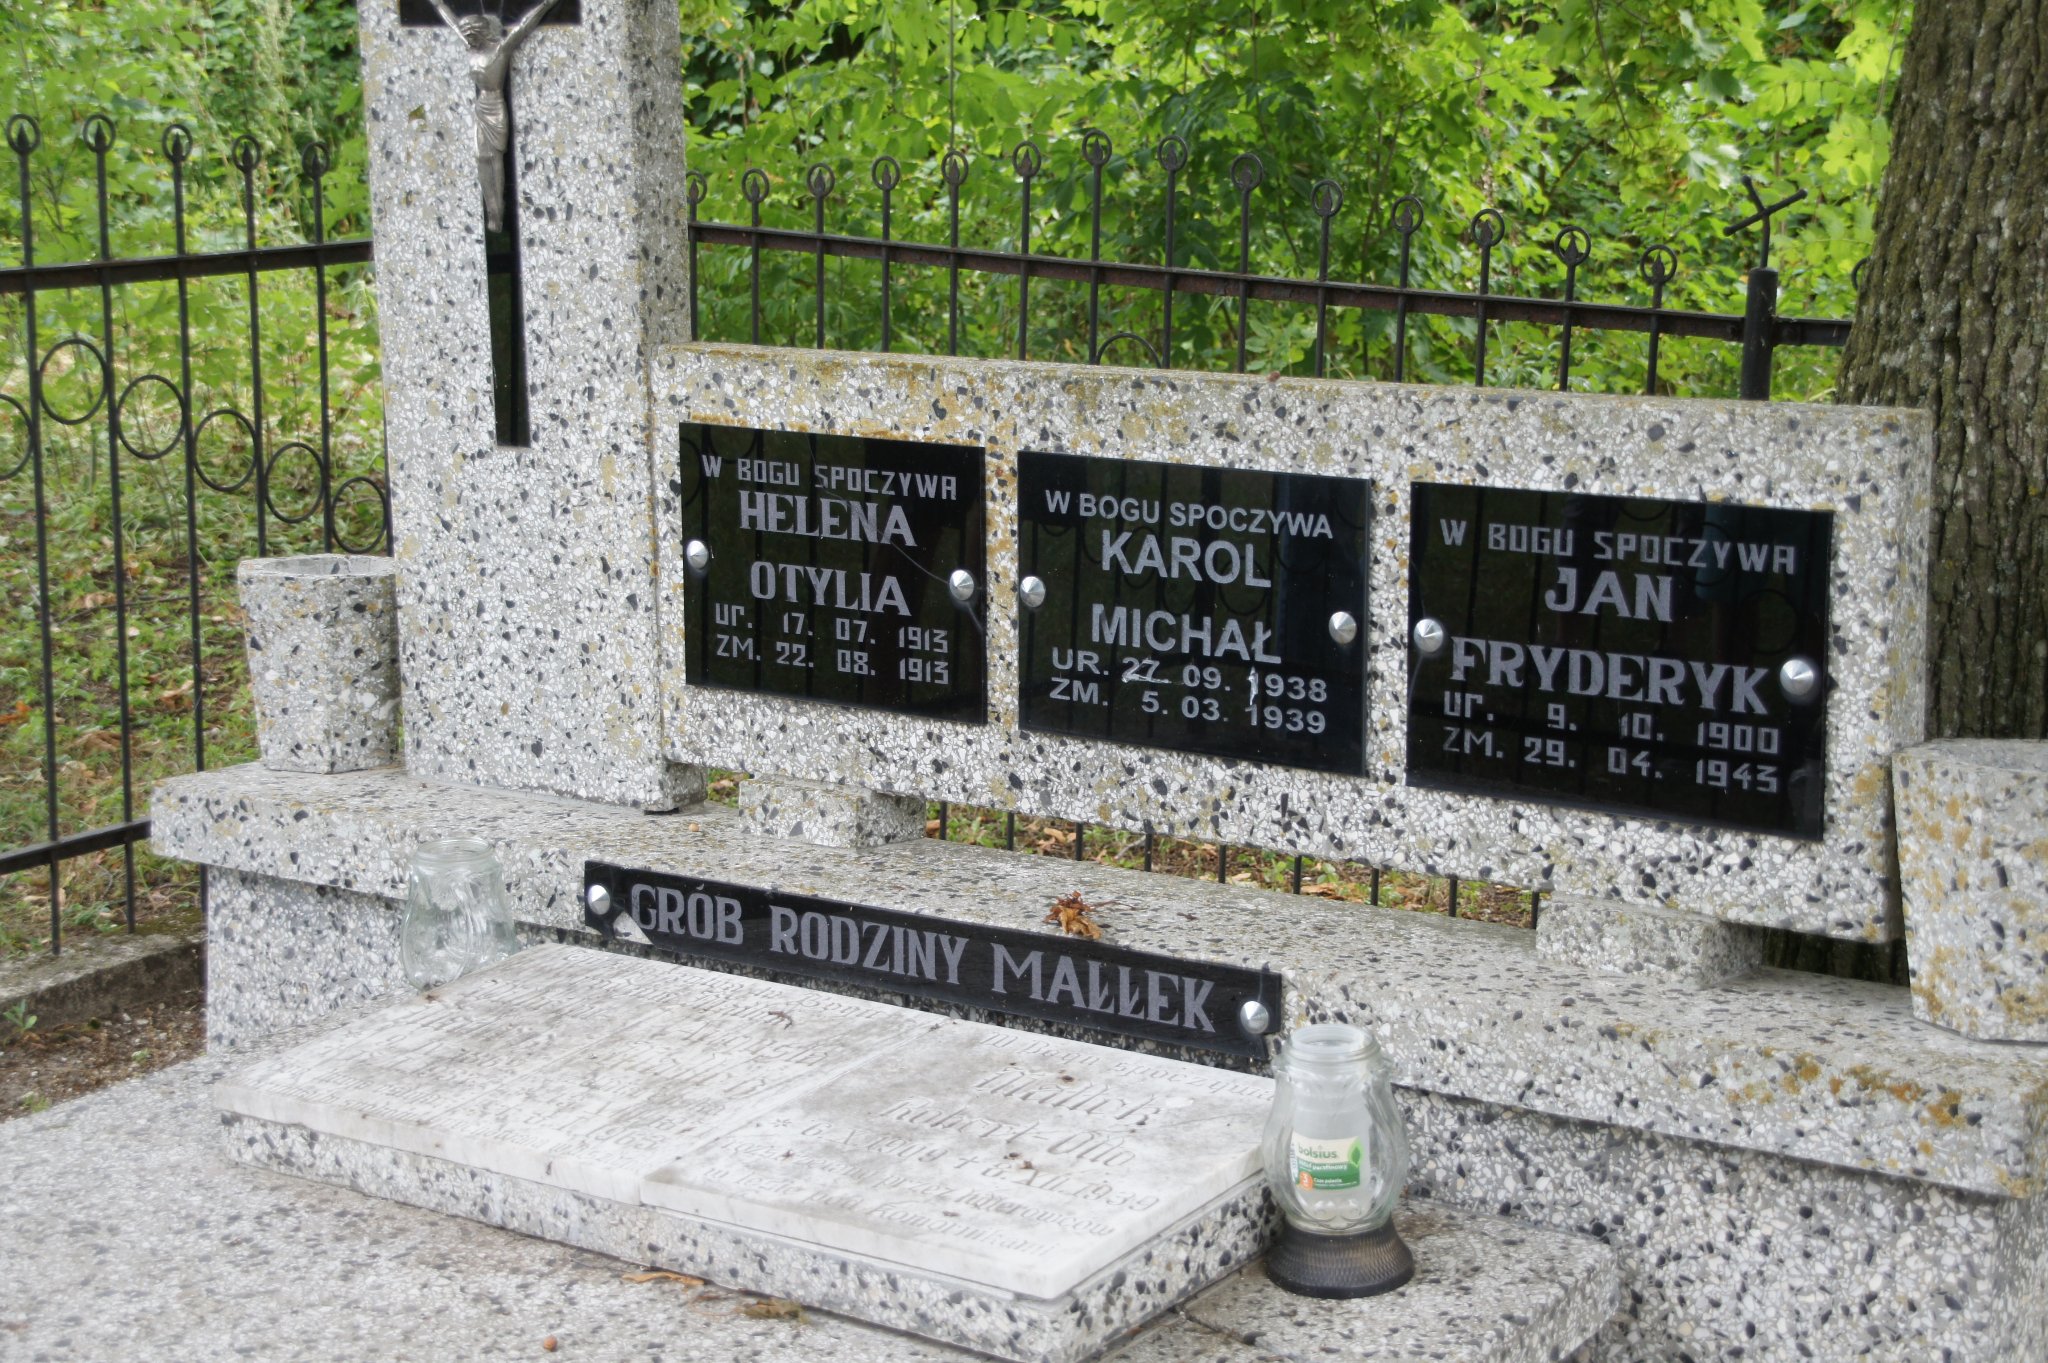 grób rodzinny w którym pochowano Karola Małłka